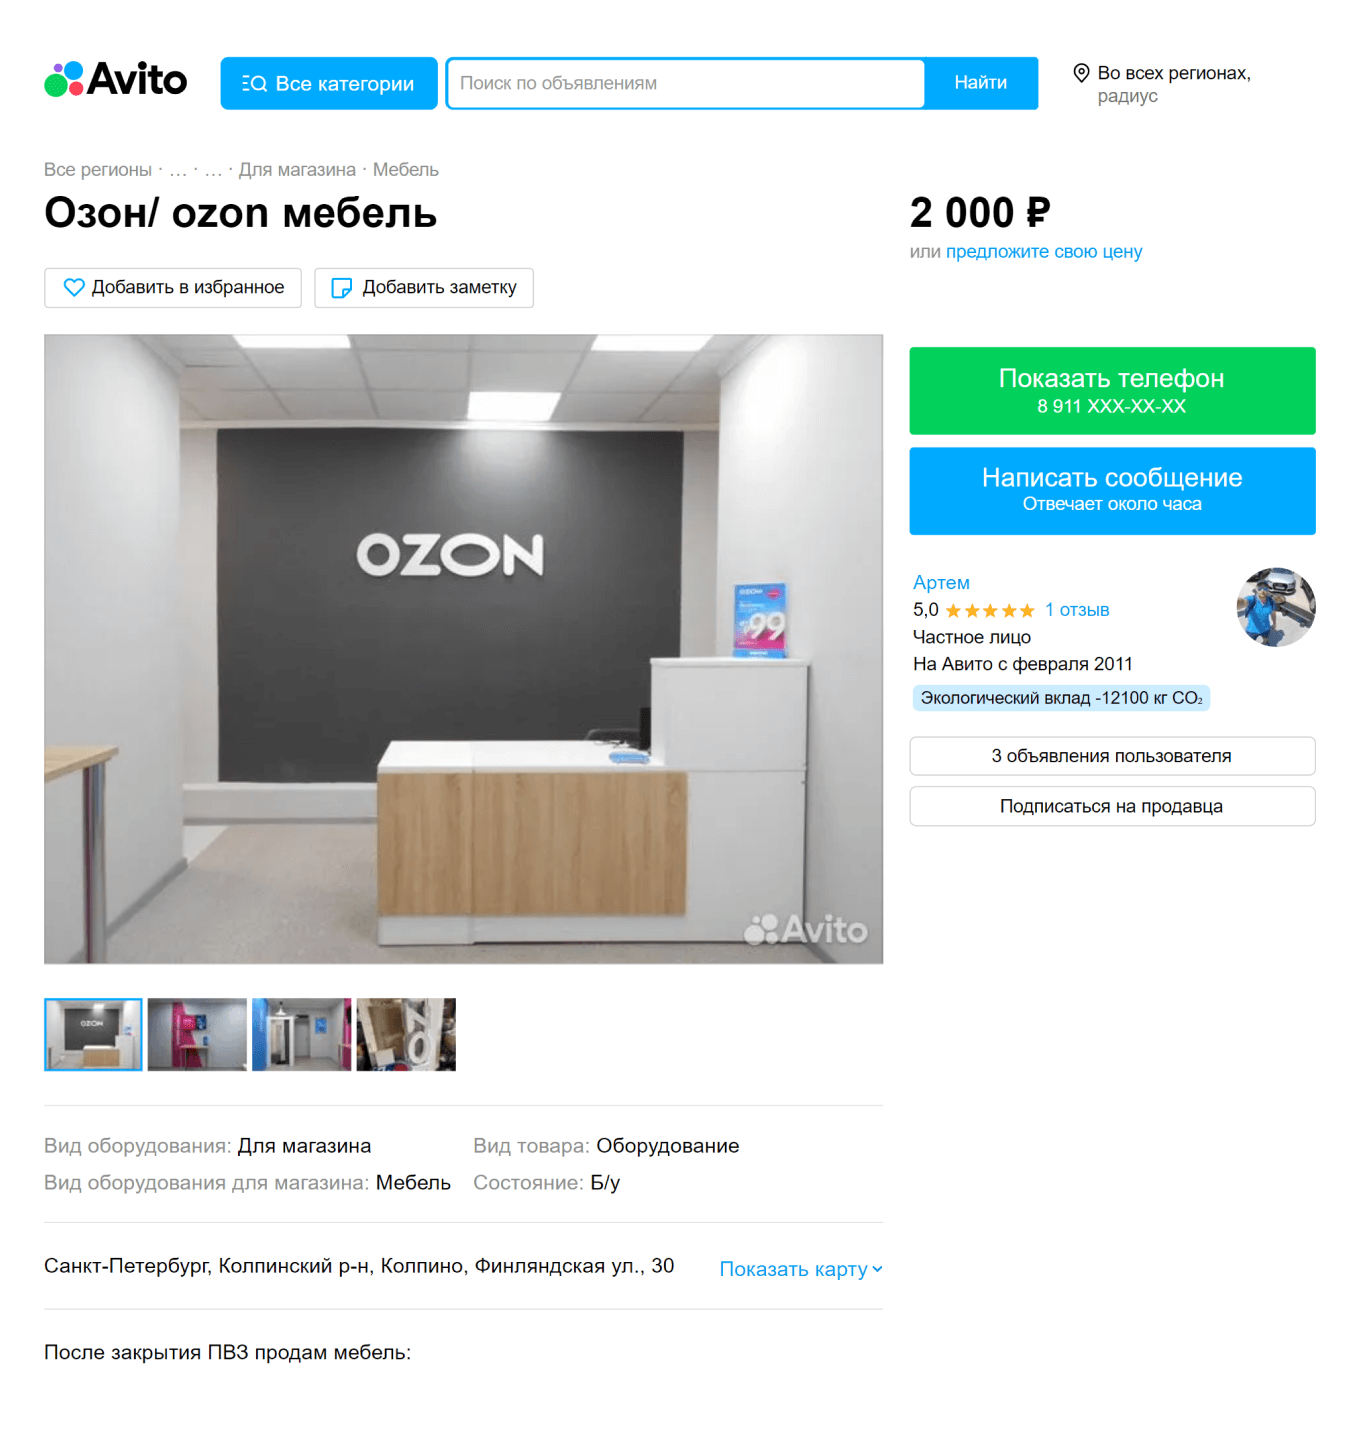 Объявление о продаже мебели после закрытия пункта Озон